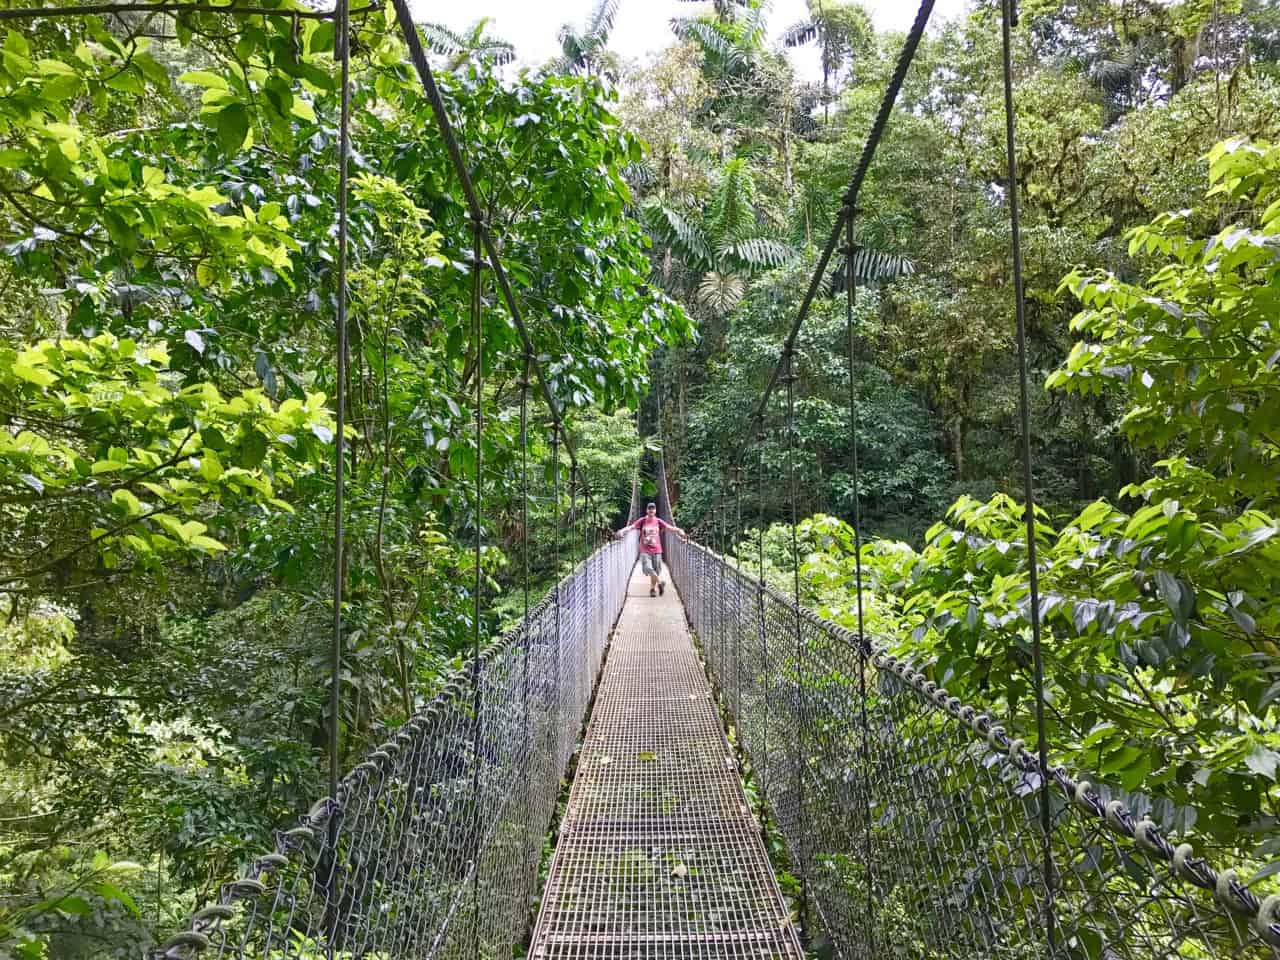  John se tient sur un pont suspendu au-dessus de la canopée à Mistico, un parc du Costa Rica.